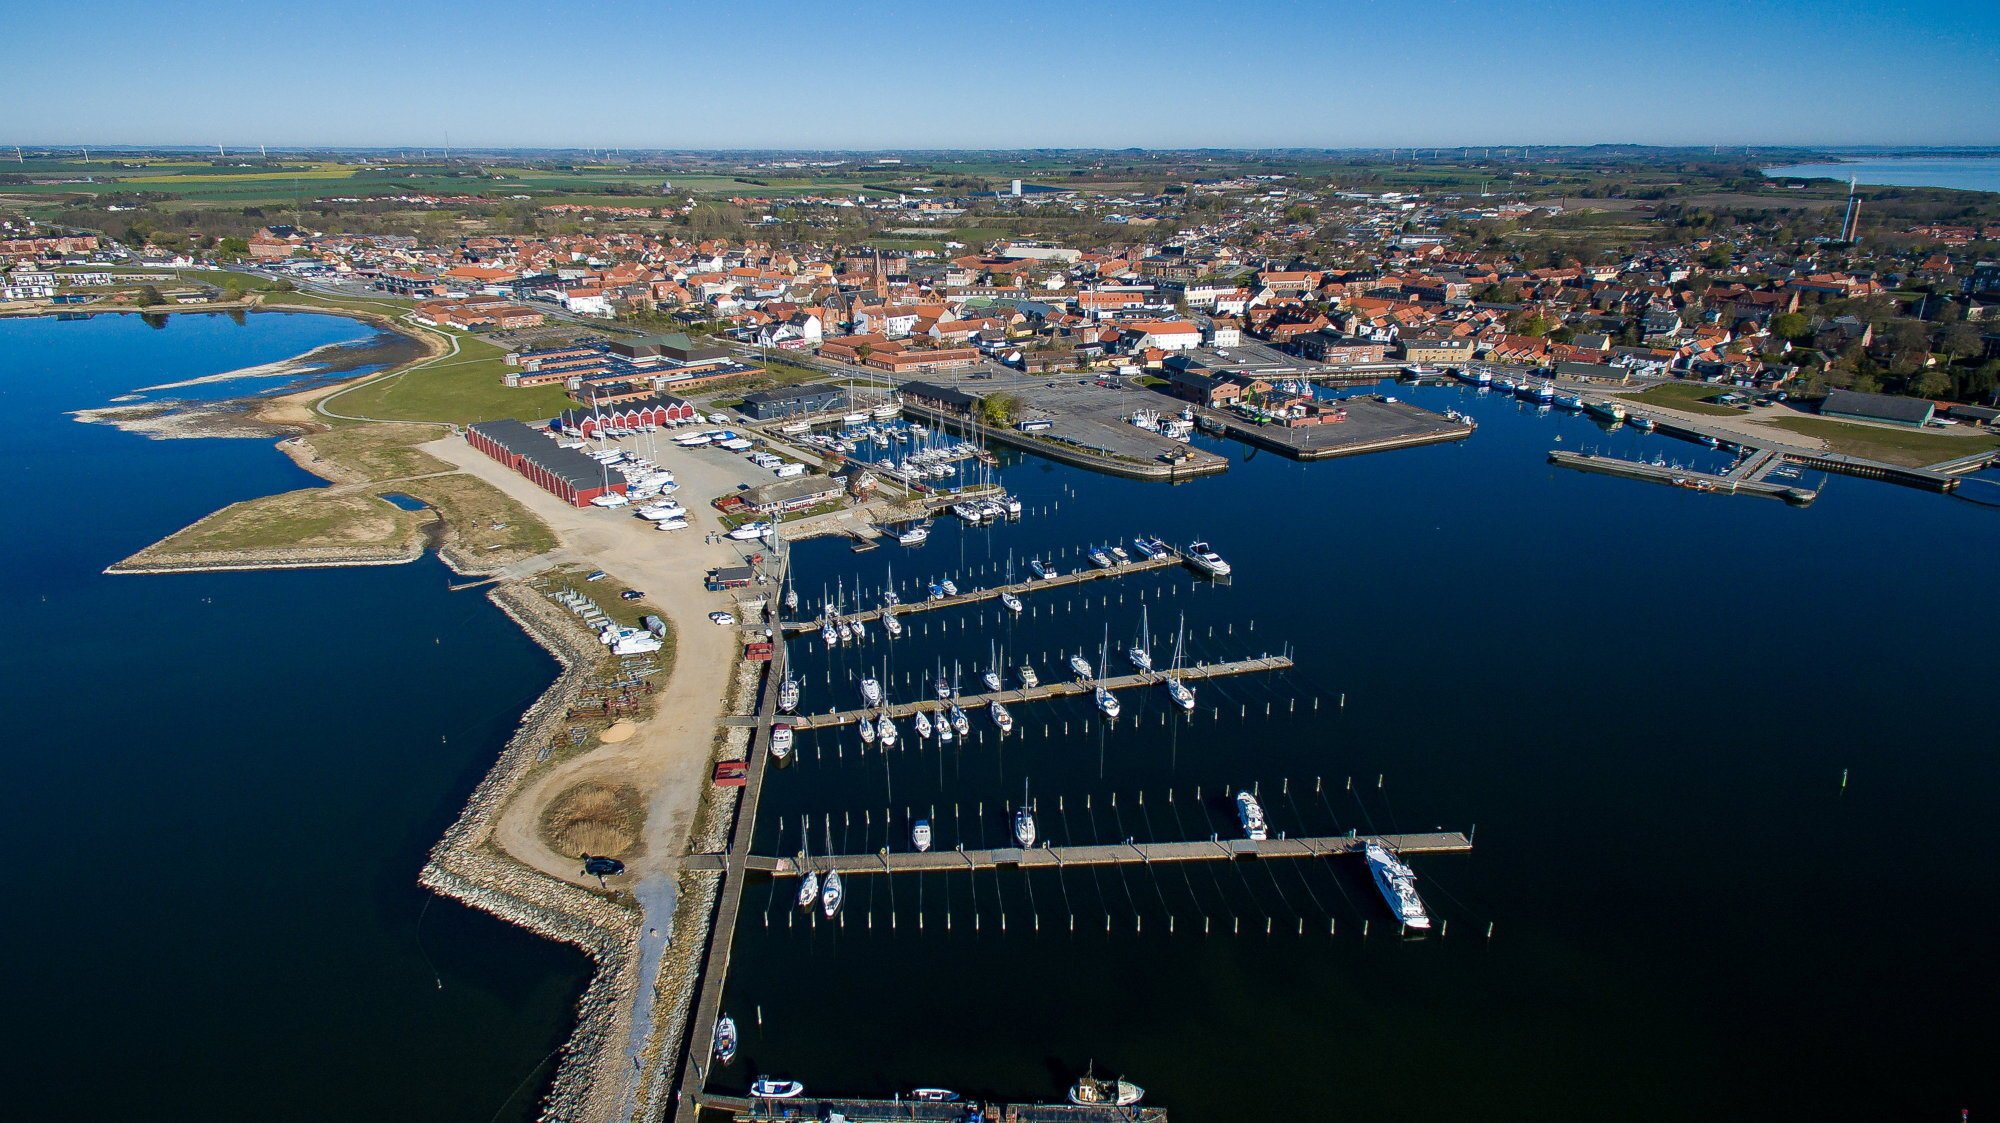 De vil bygge ferieboliger ved havneø | Nordjyske.dk